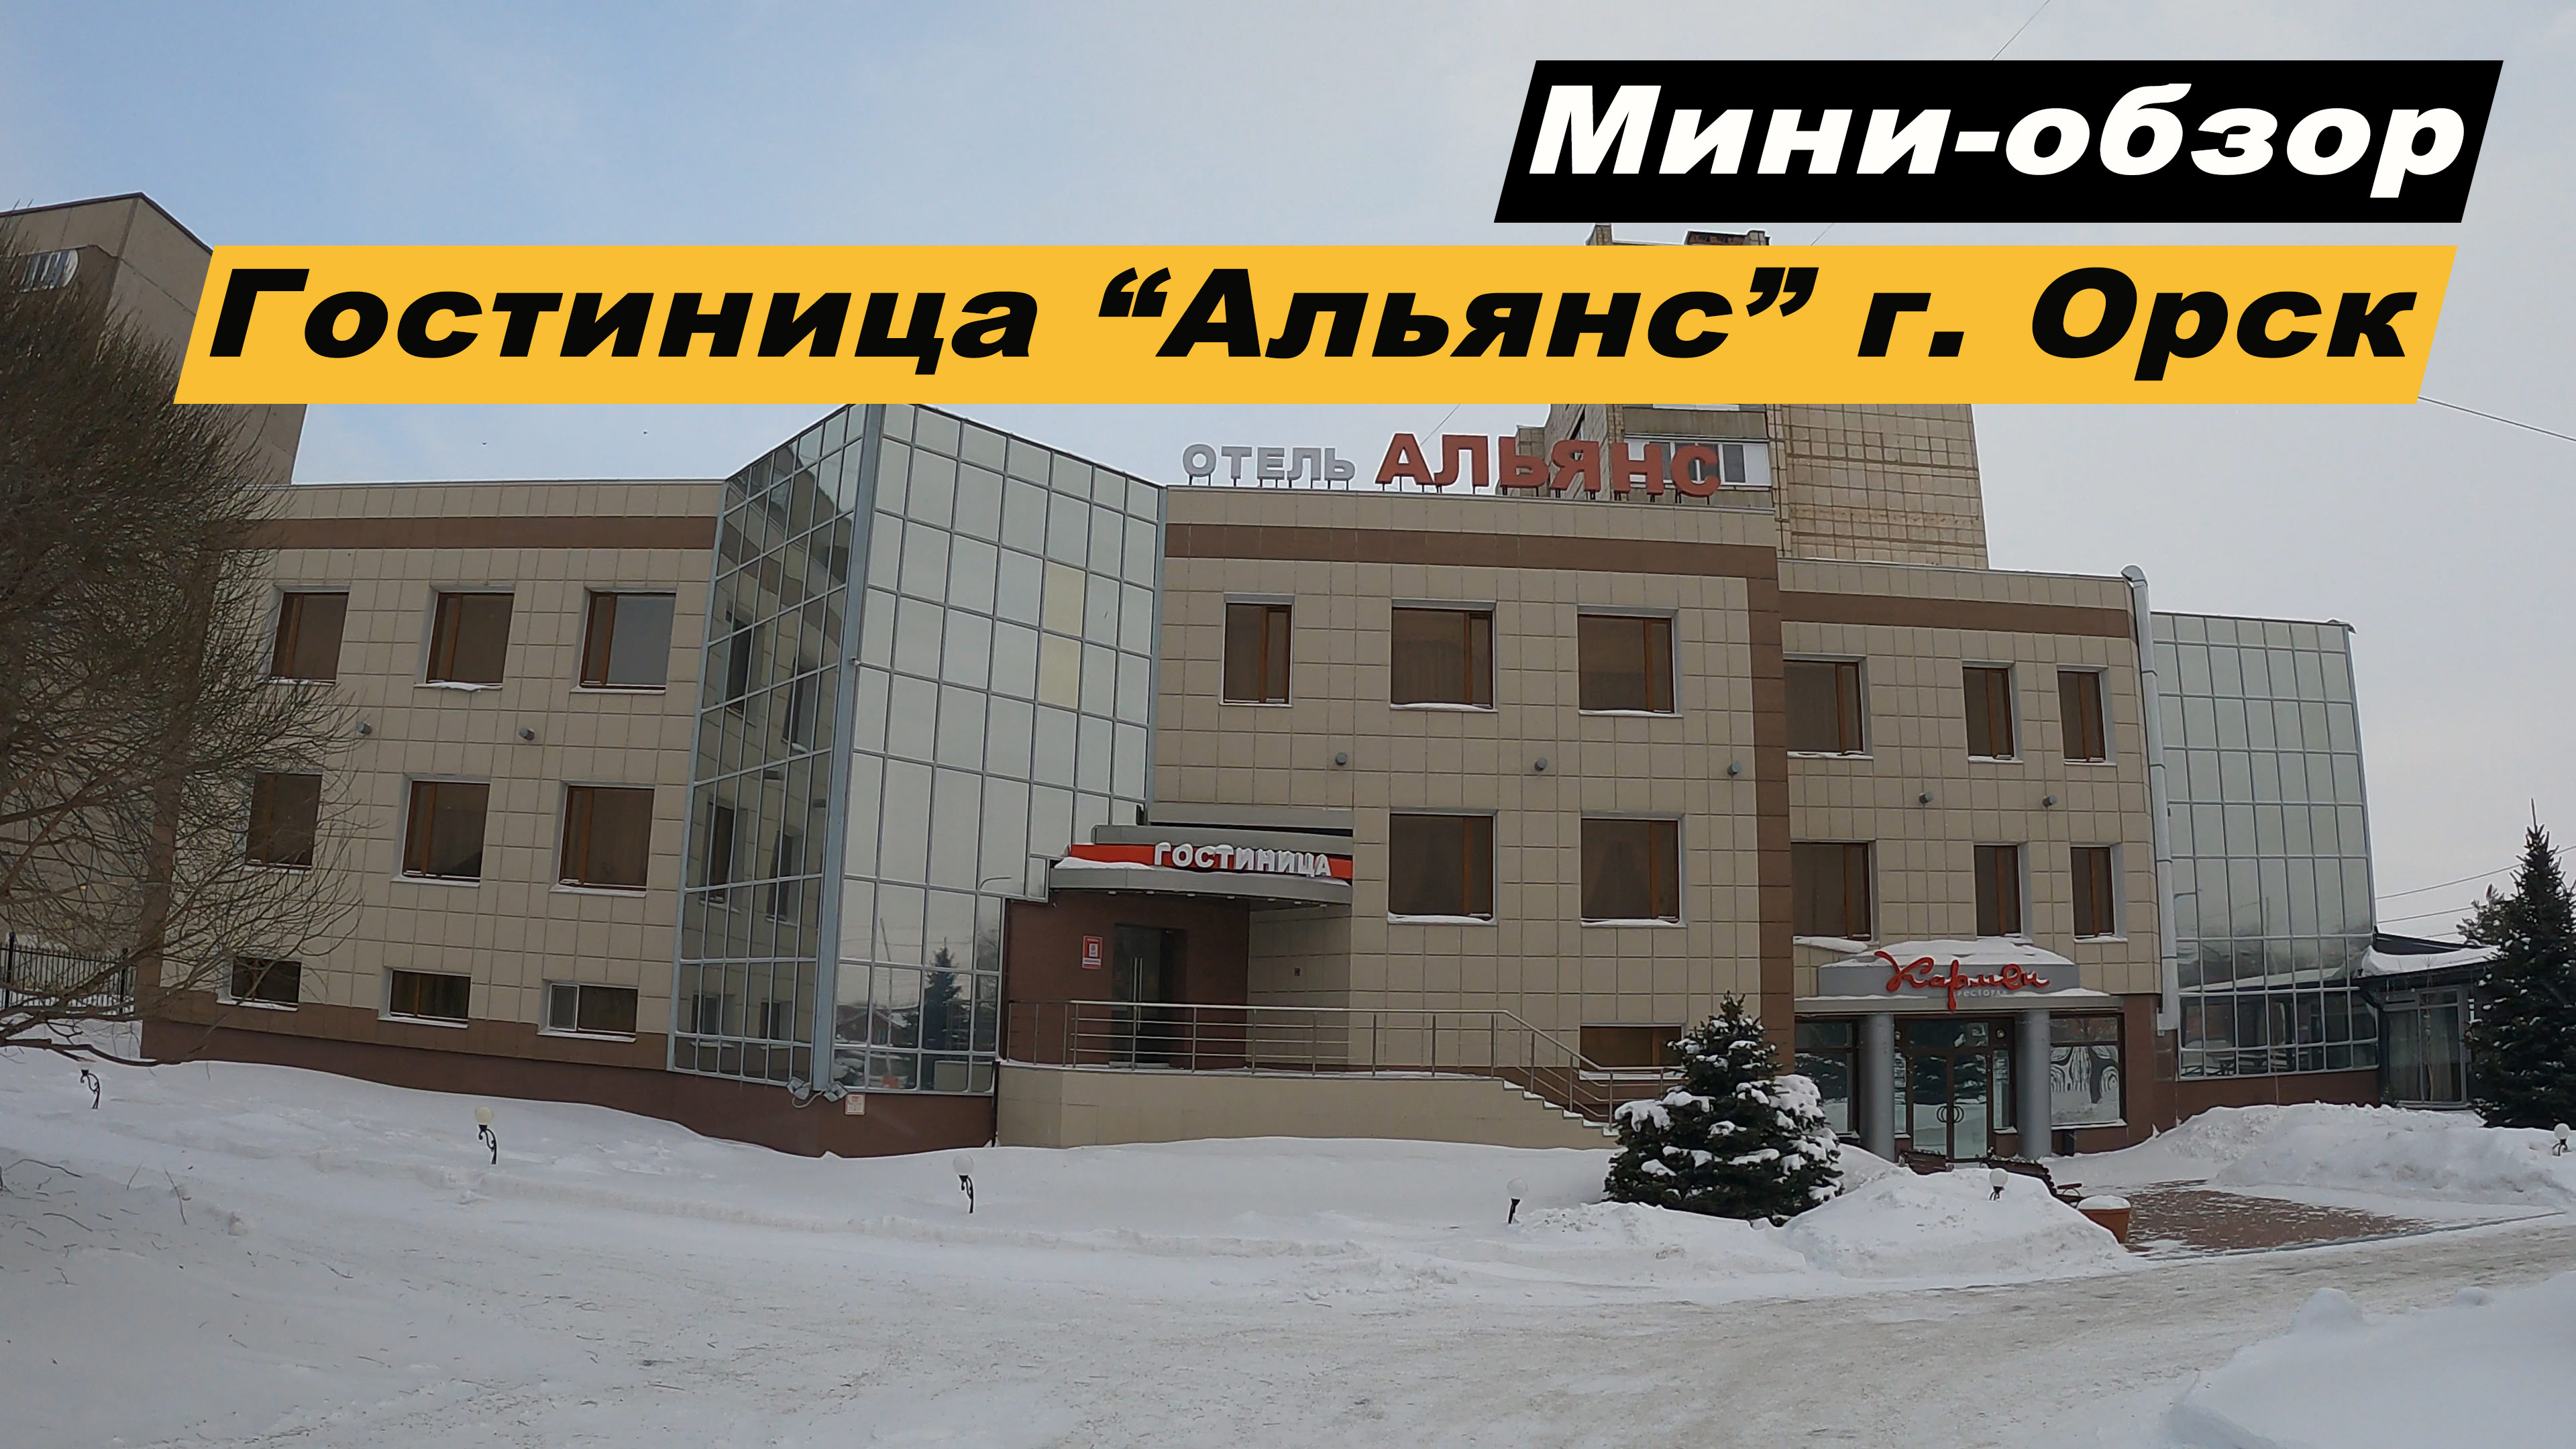 Мини-обзор отеля Альянс в г.Орск, Оренбургской области. Hotel Alliance.